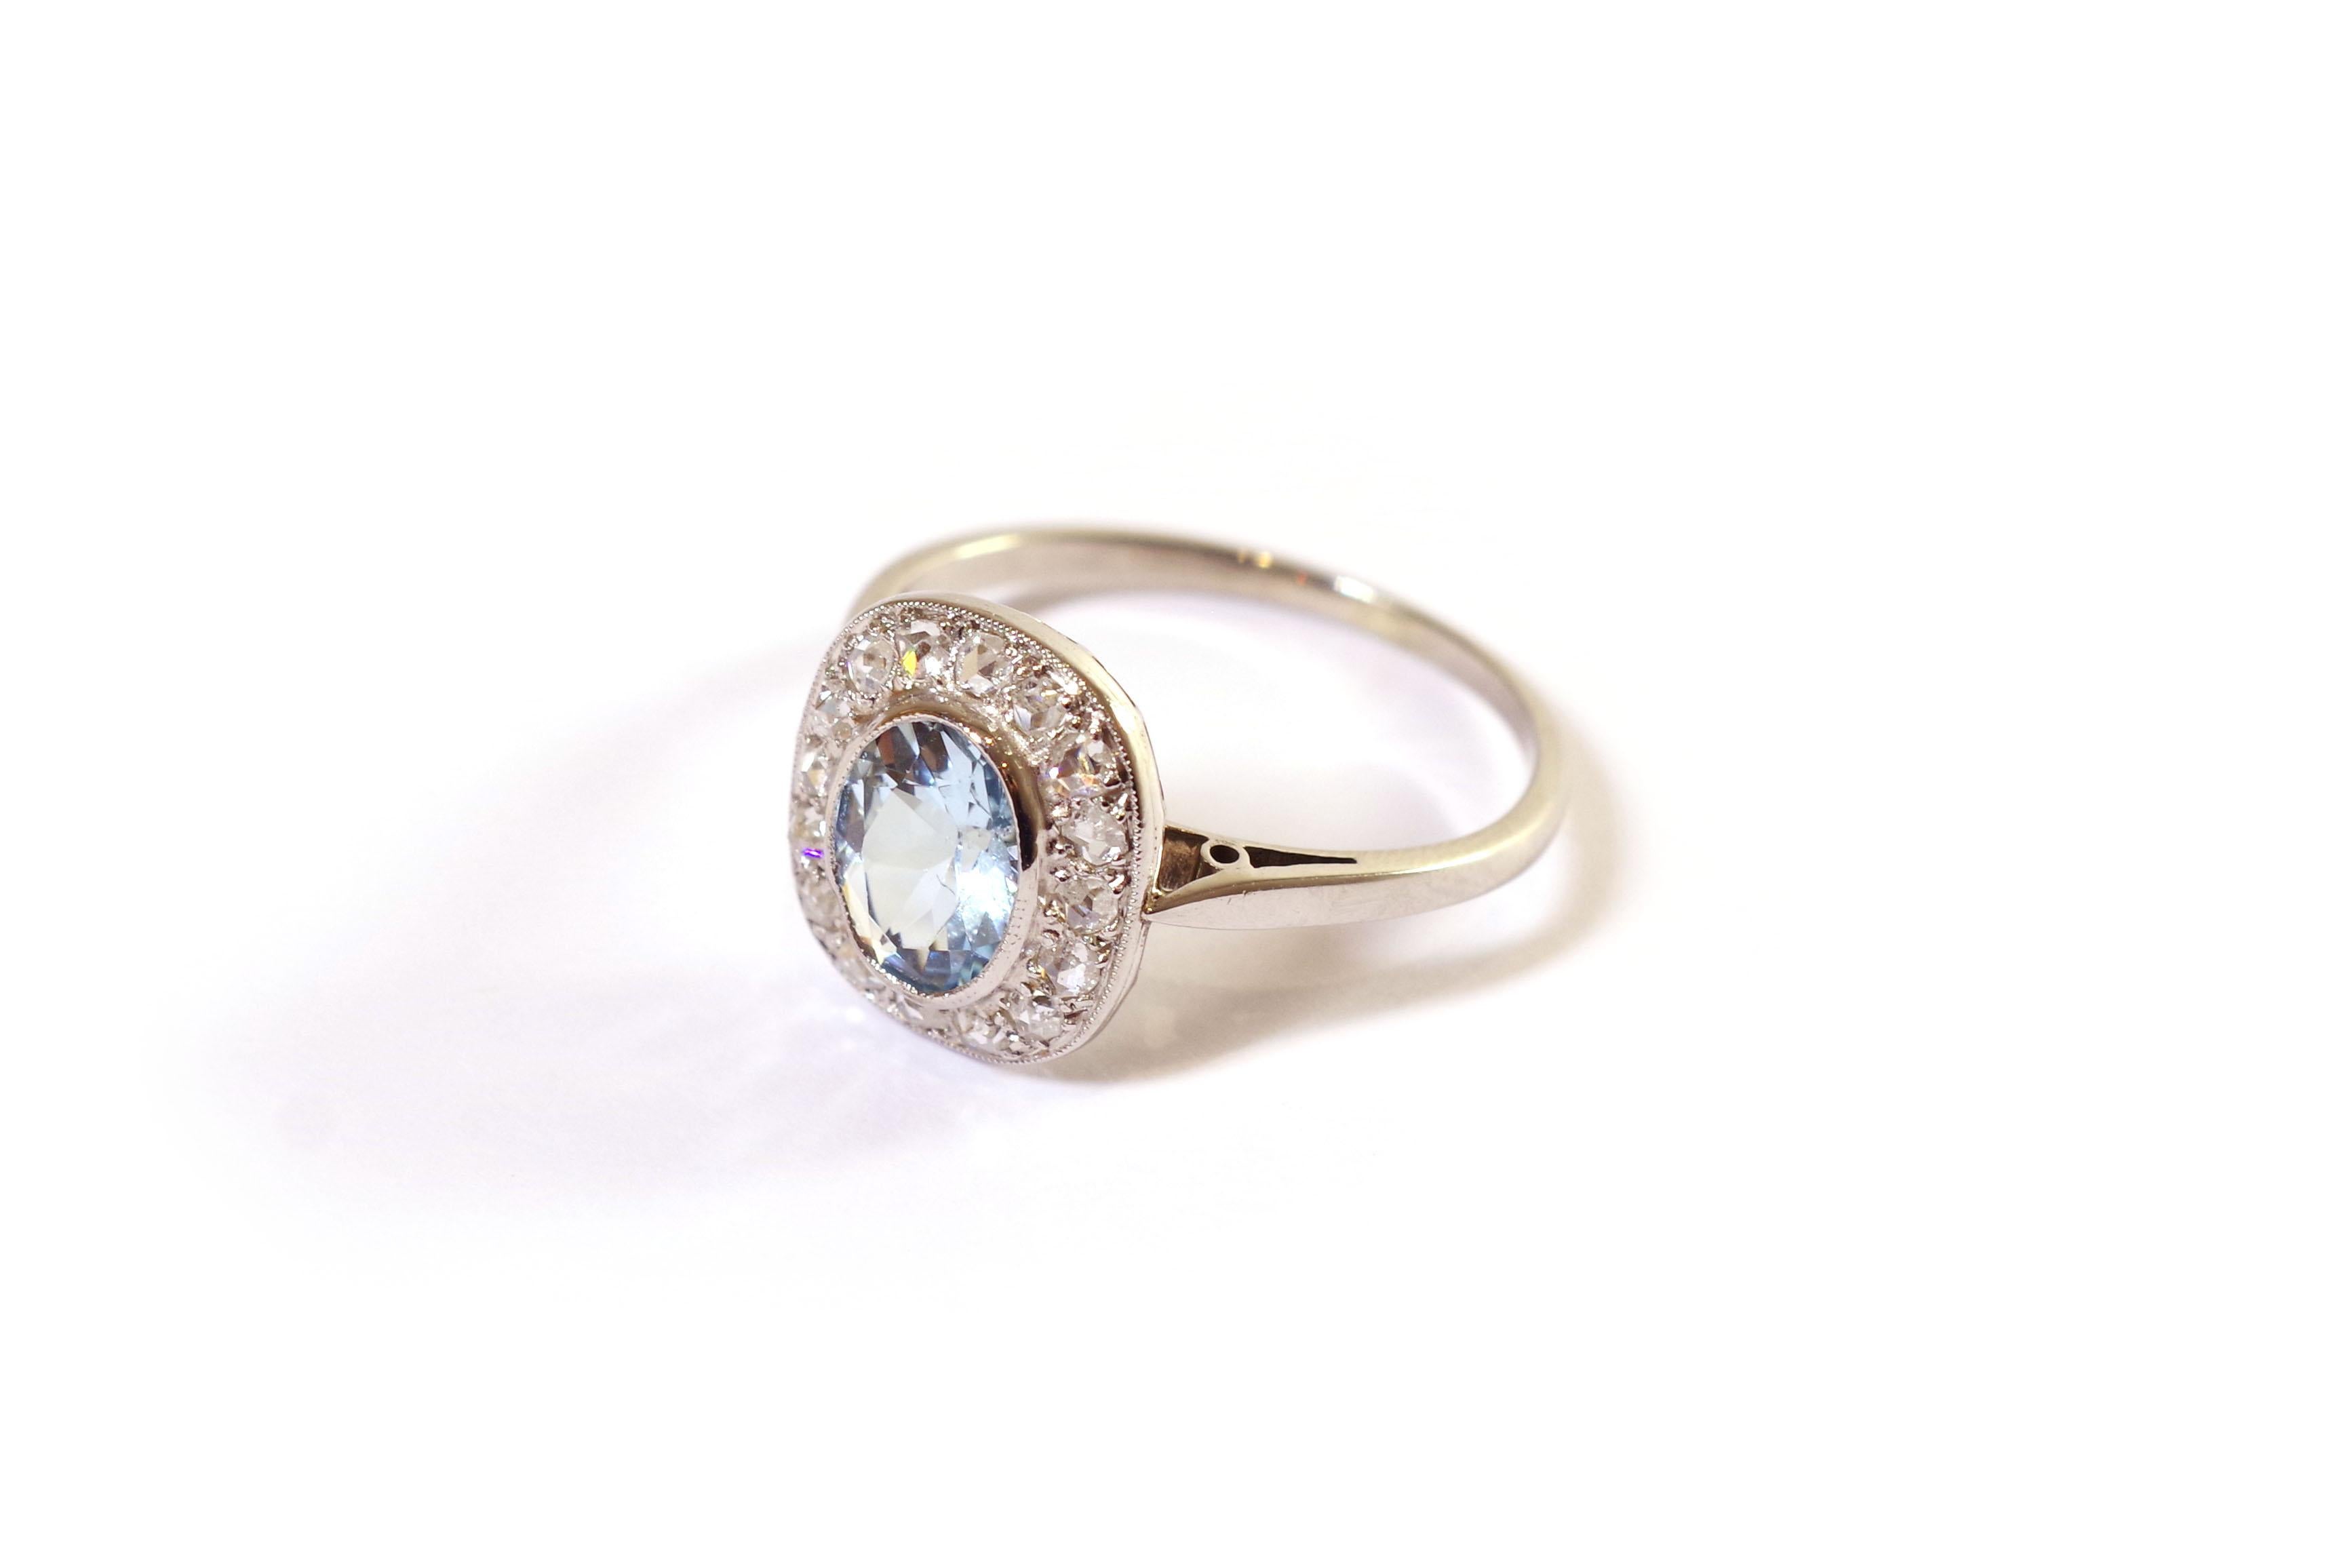 Belle Époque Belle Epoque Aquamarine Diamonds Ring in Gold and Platinum, Cluster Wedding Ring For Sale